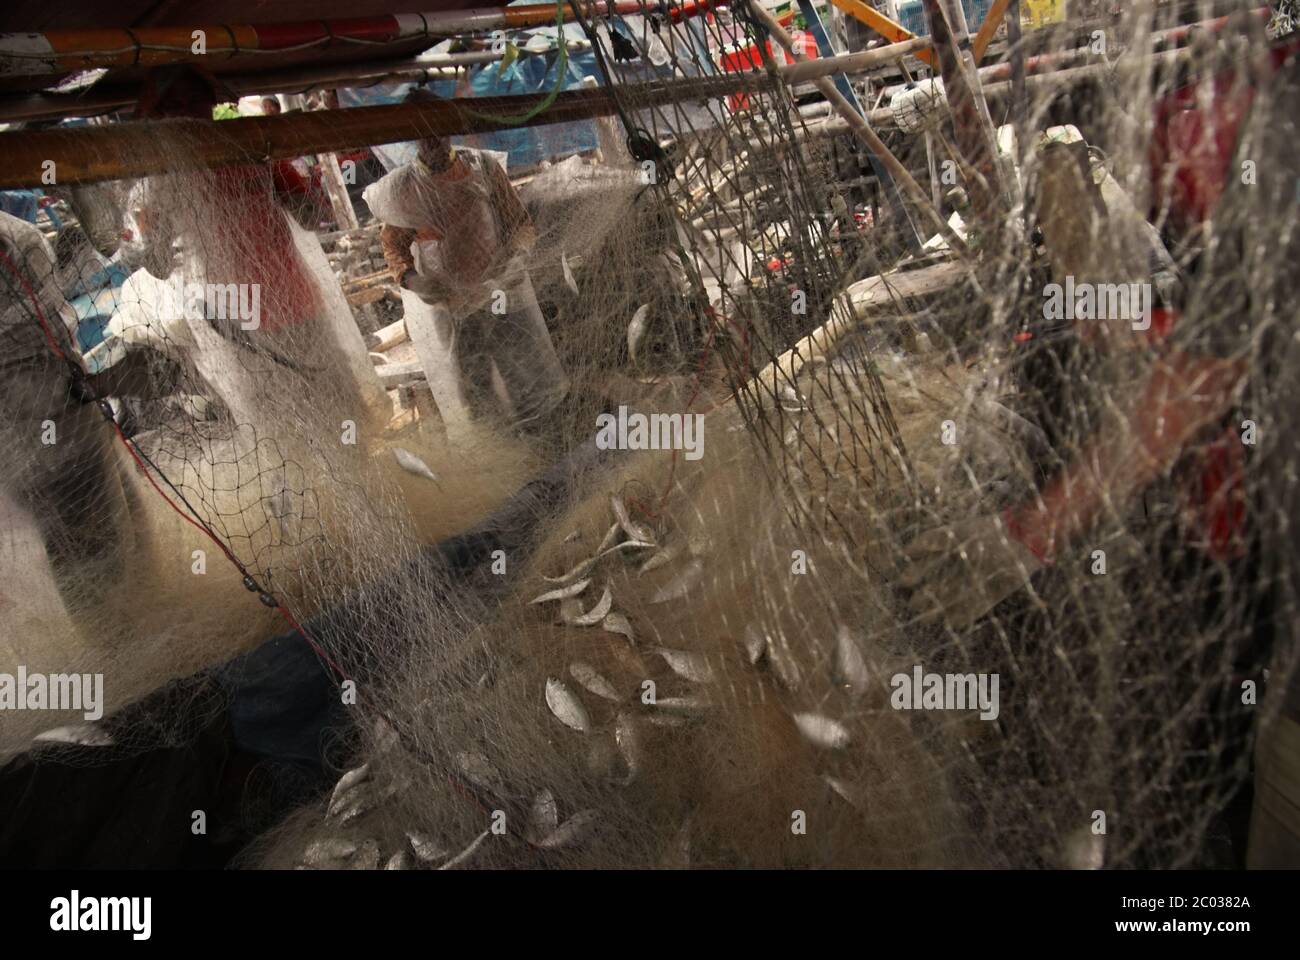 Pescadores que recogen los peces capturados en una red de arrastre en un barco atracado en el puerto pesquero comunitario de Cilincing, Yakarta septentrional, Indonesia. Foto de stock